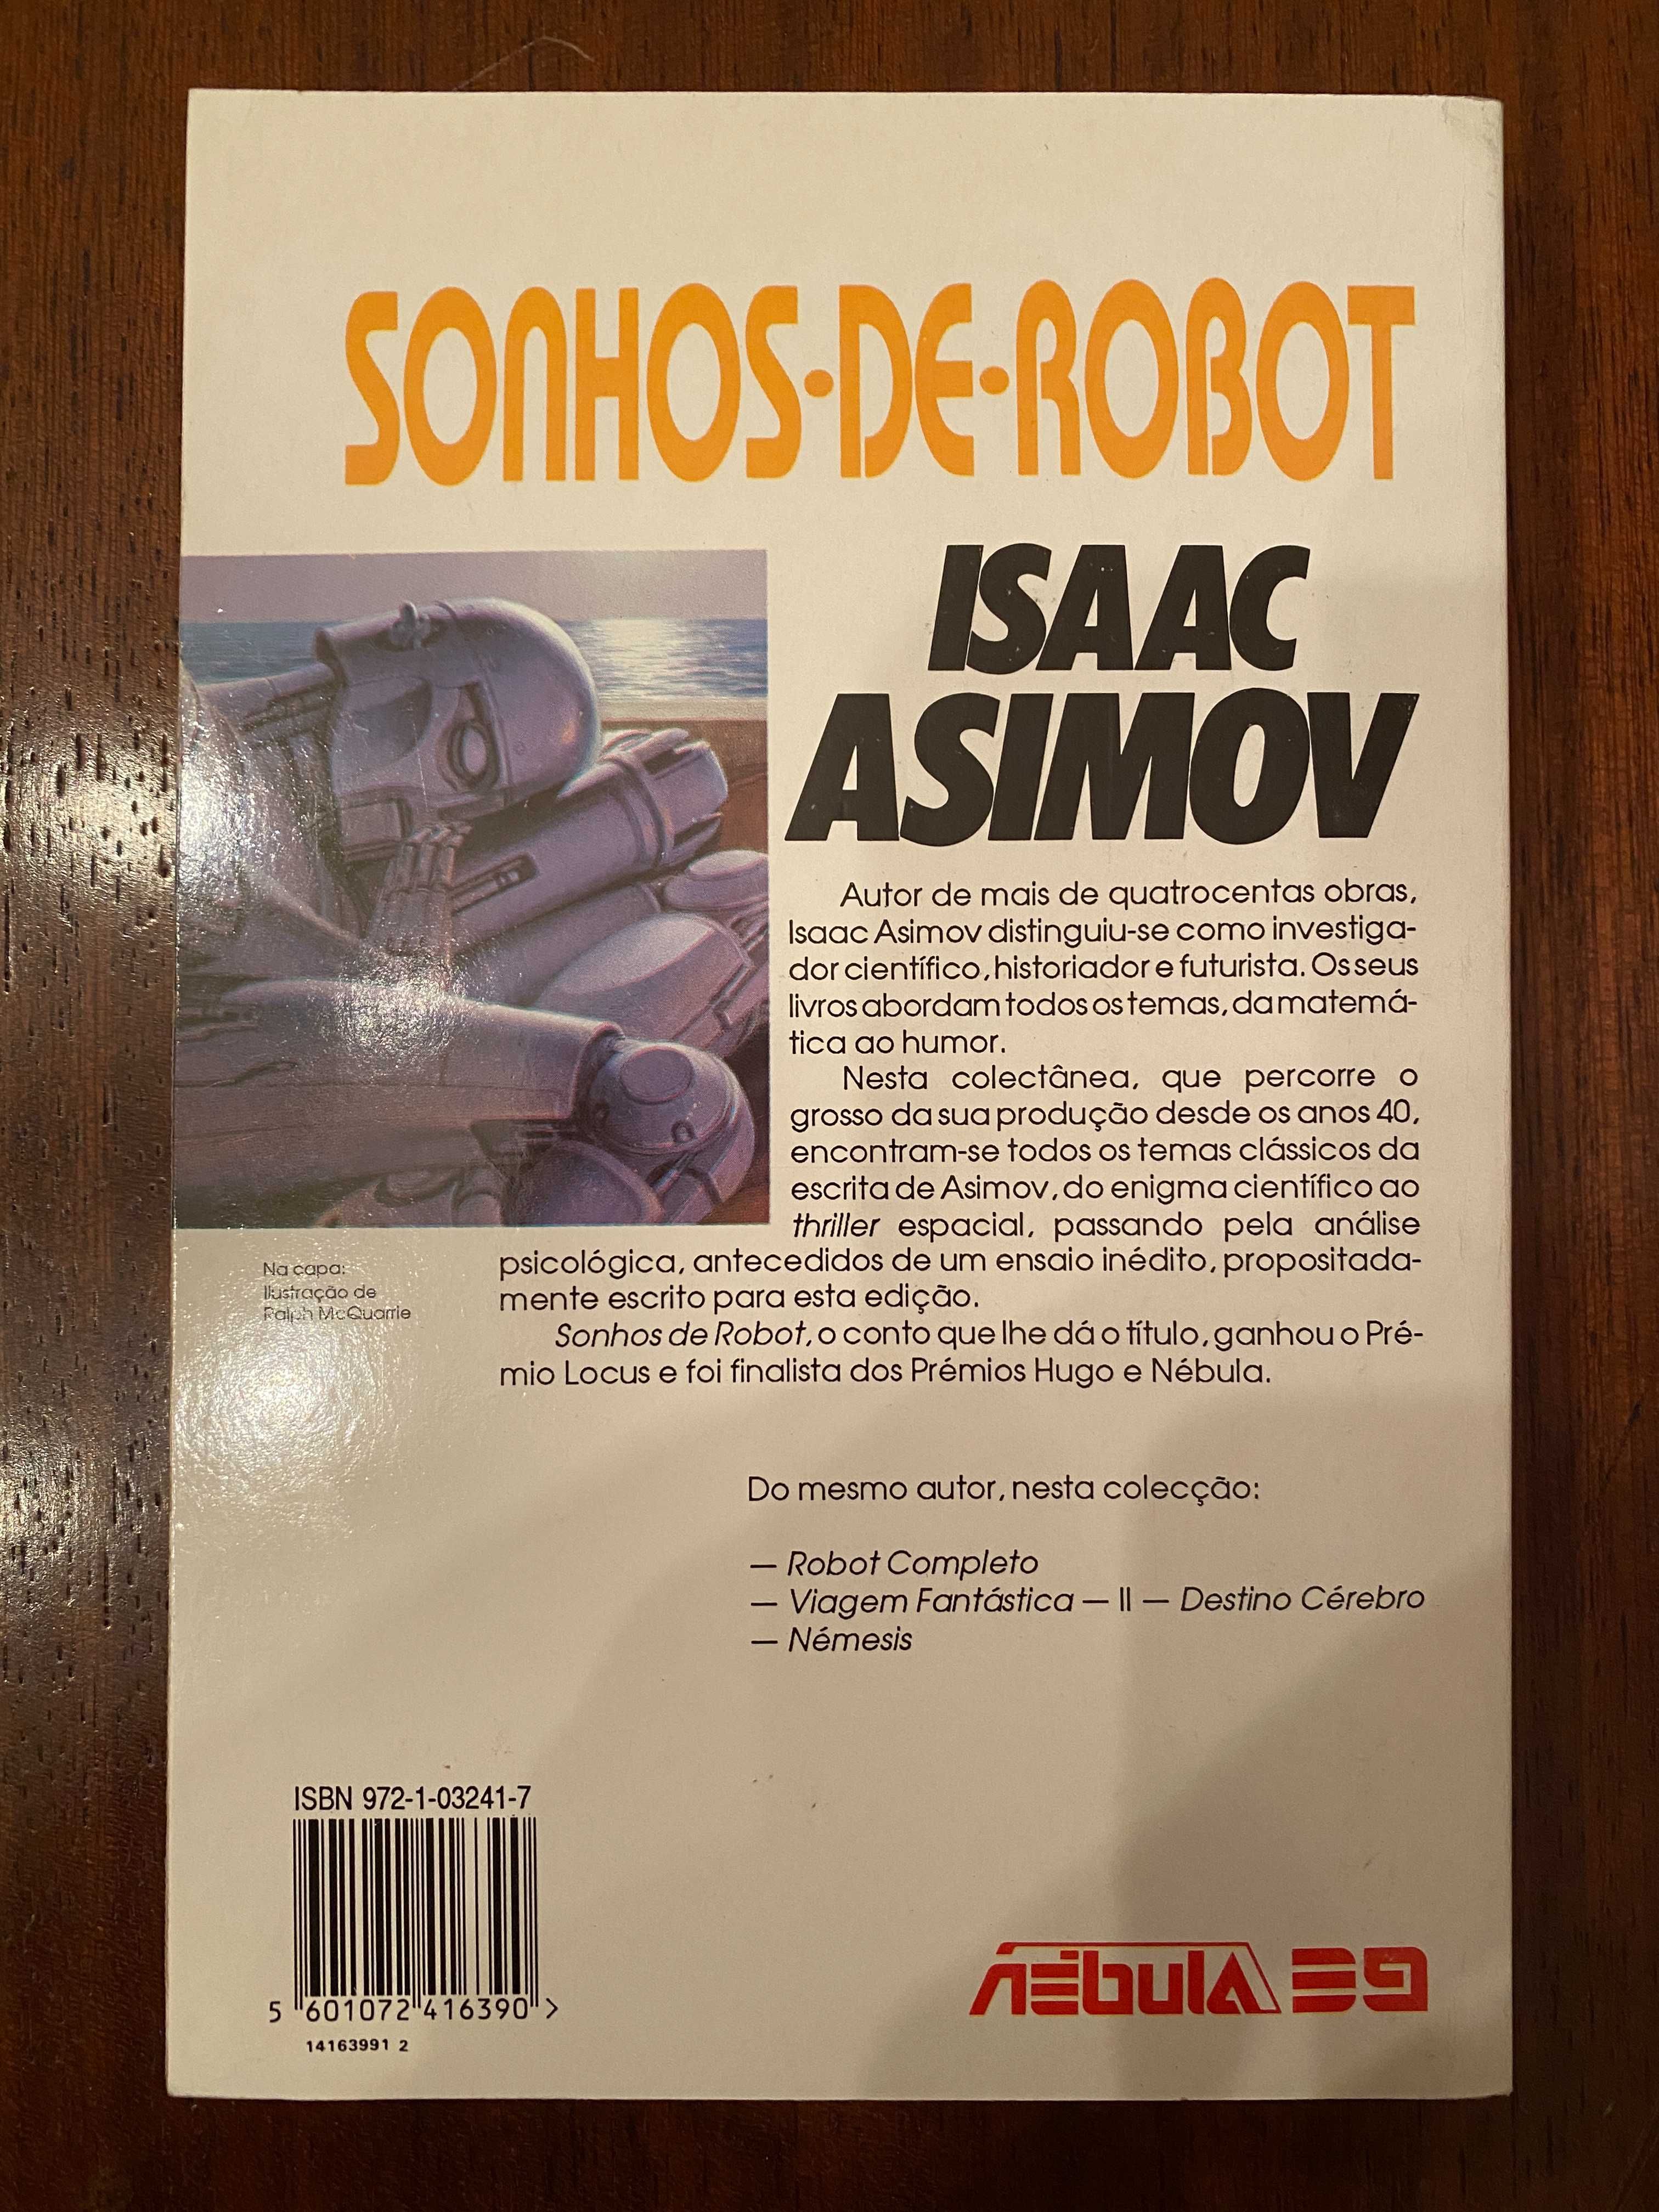 Sonhos de Robot, de Isaac Asimov